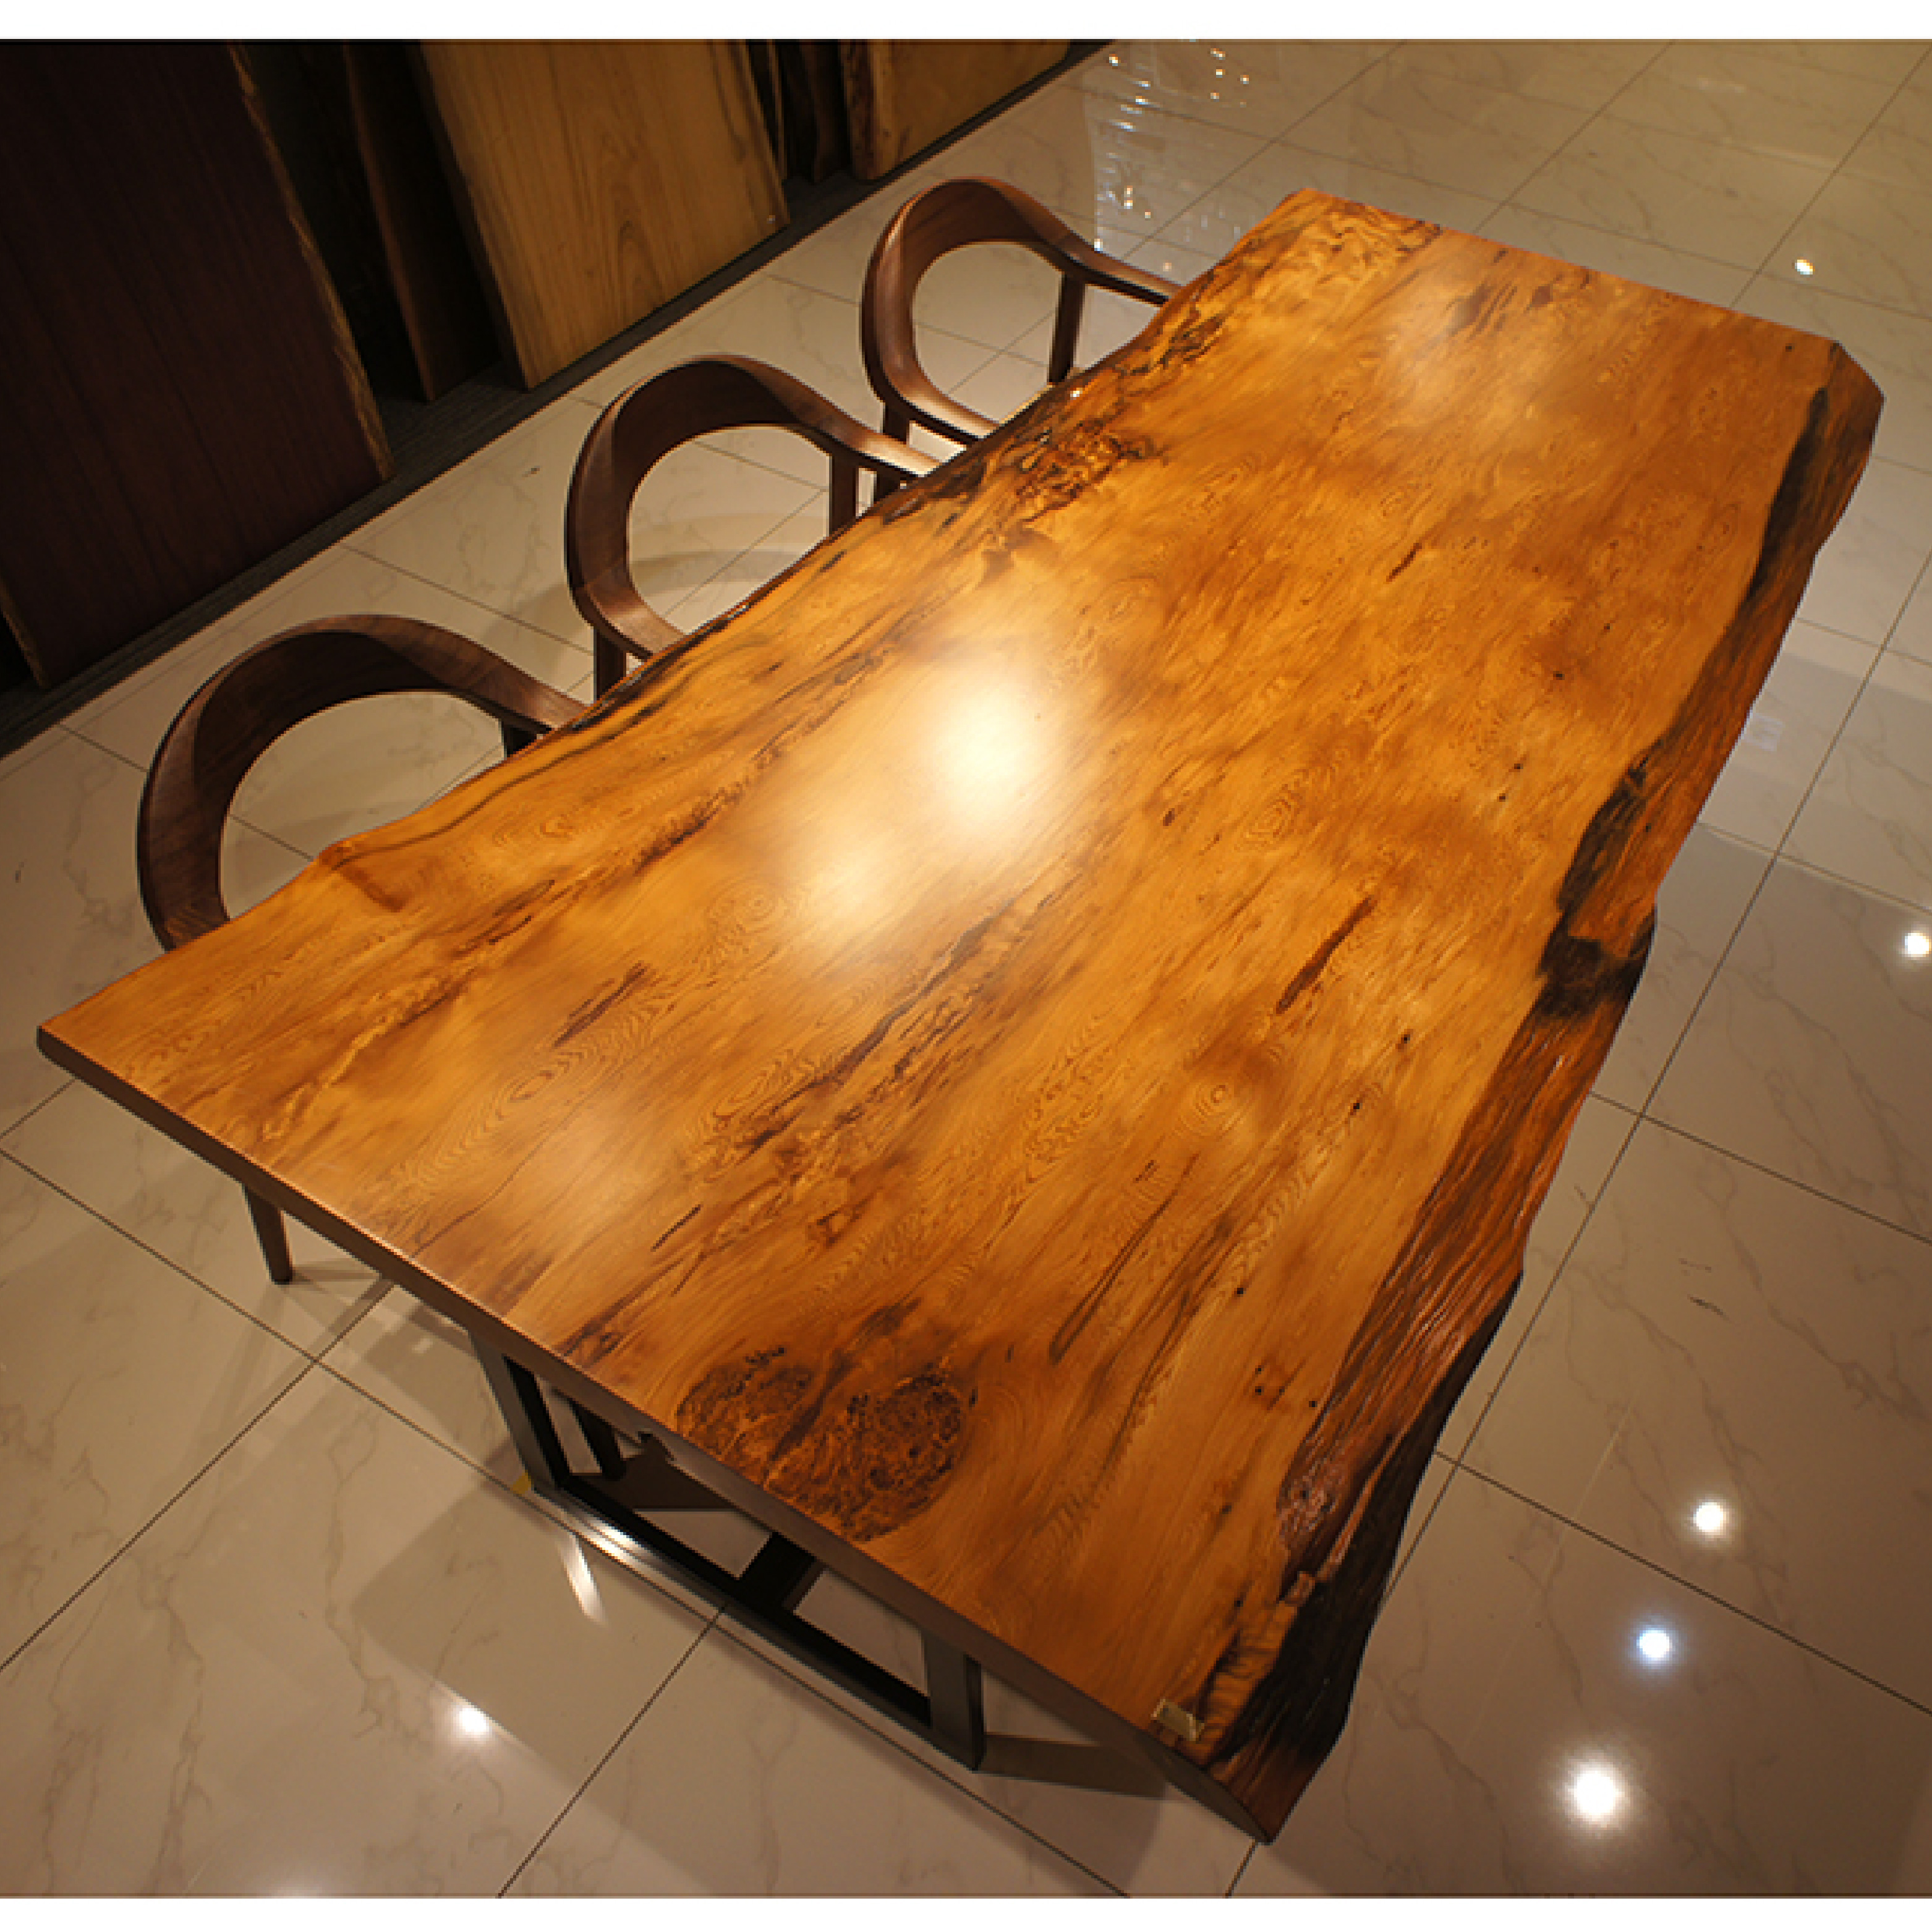 一枚板 屋久杉 RP-CN-A1166-2911 (W210cm): ダイニングテーブル 関家具